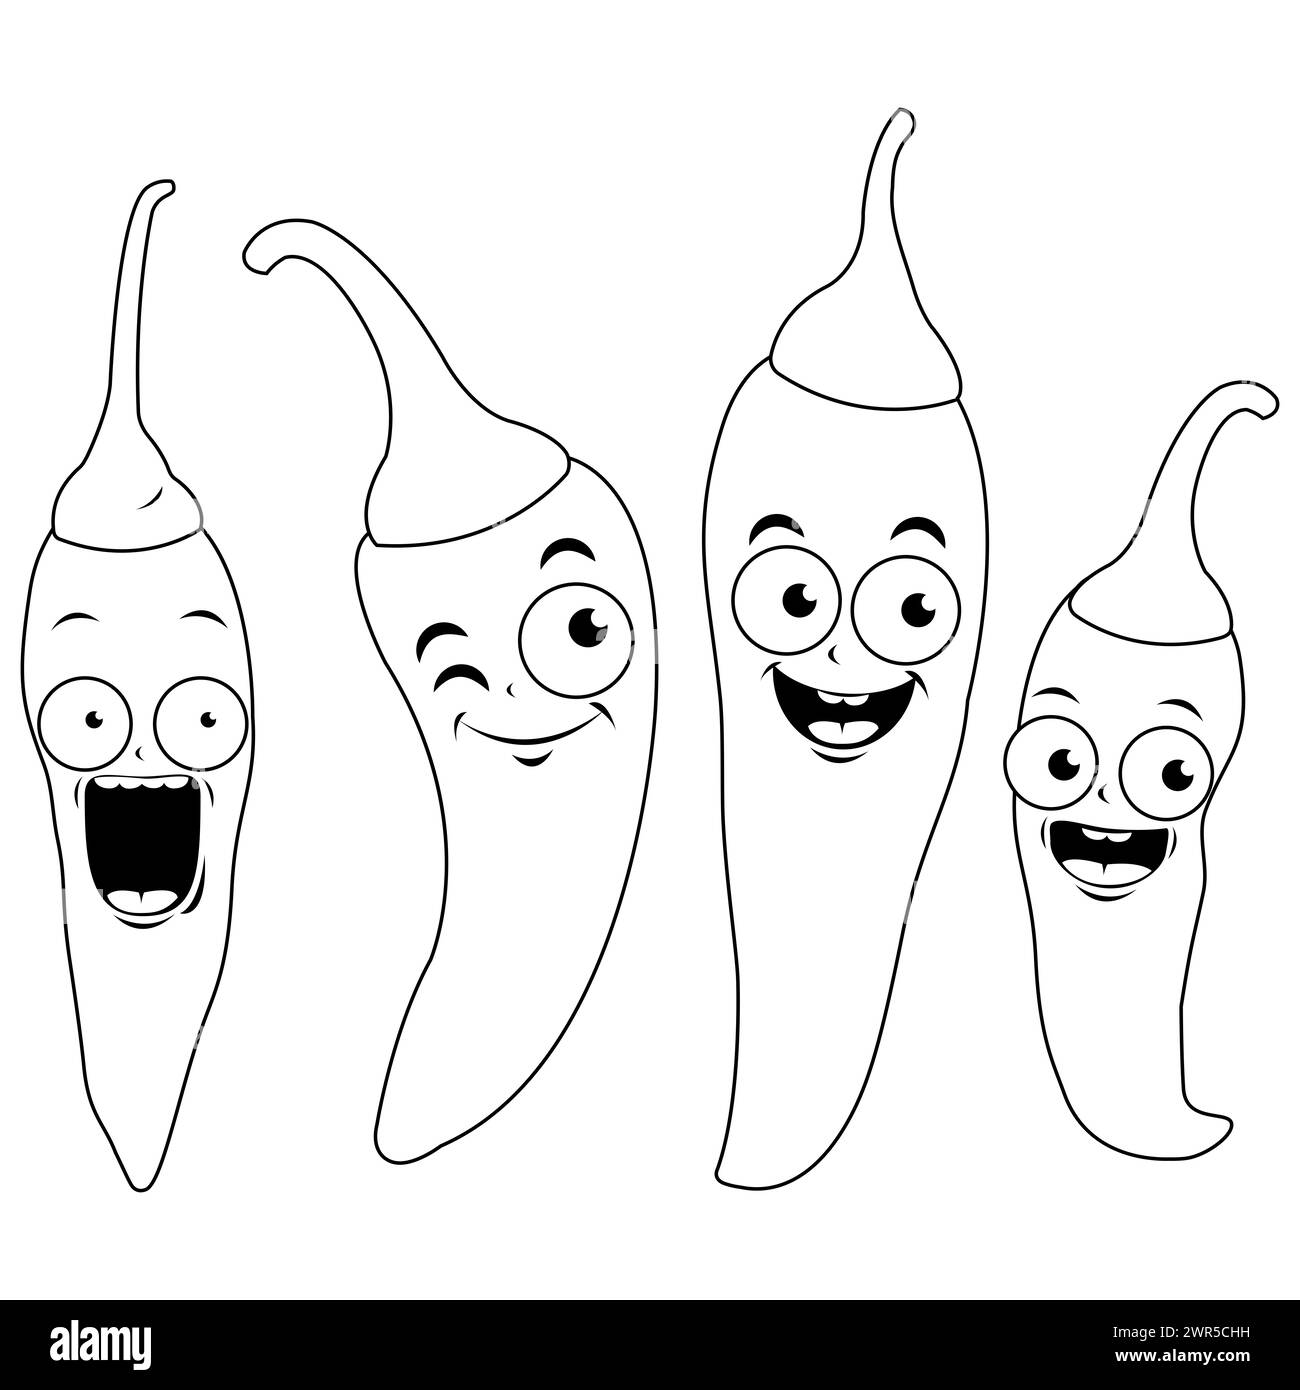 Personnages de piment chaud de dessin animé. Piments jalapeno épicés mexicains. Coloriage noir et blanc Banque D'Images